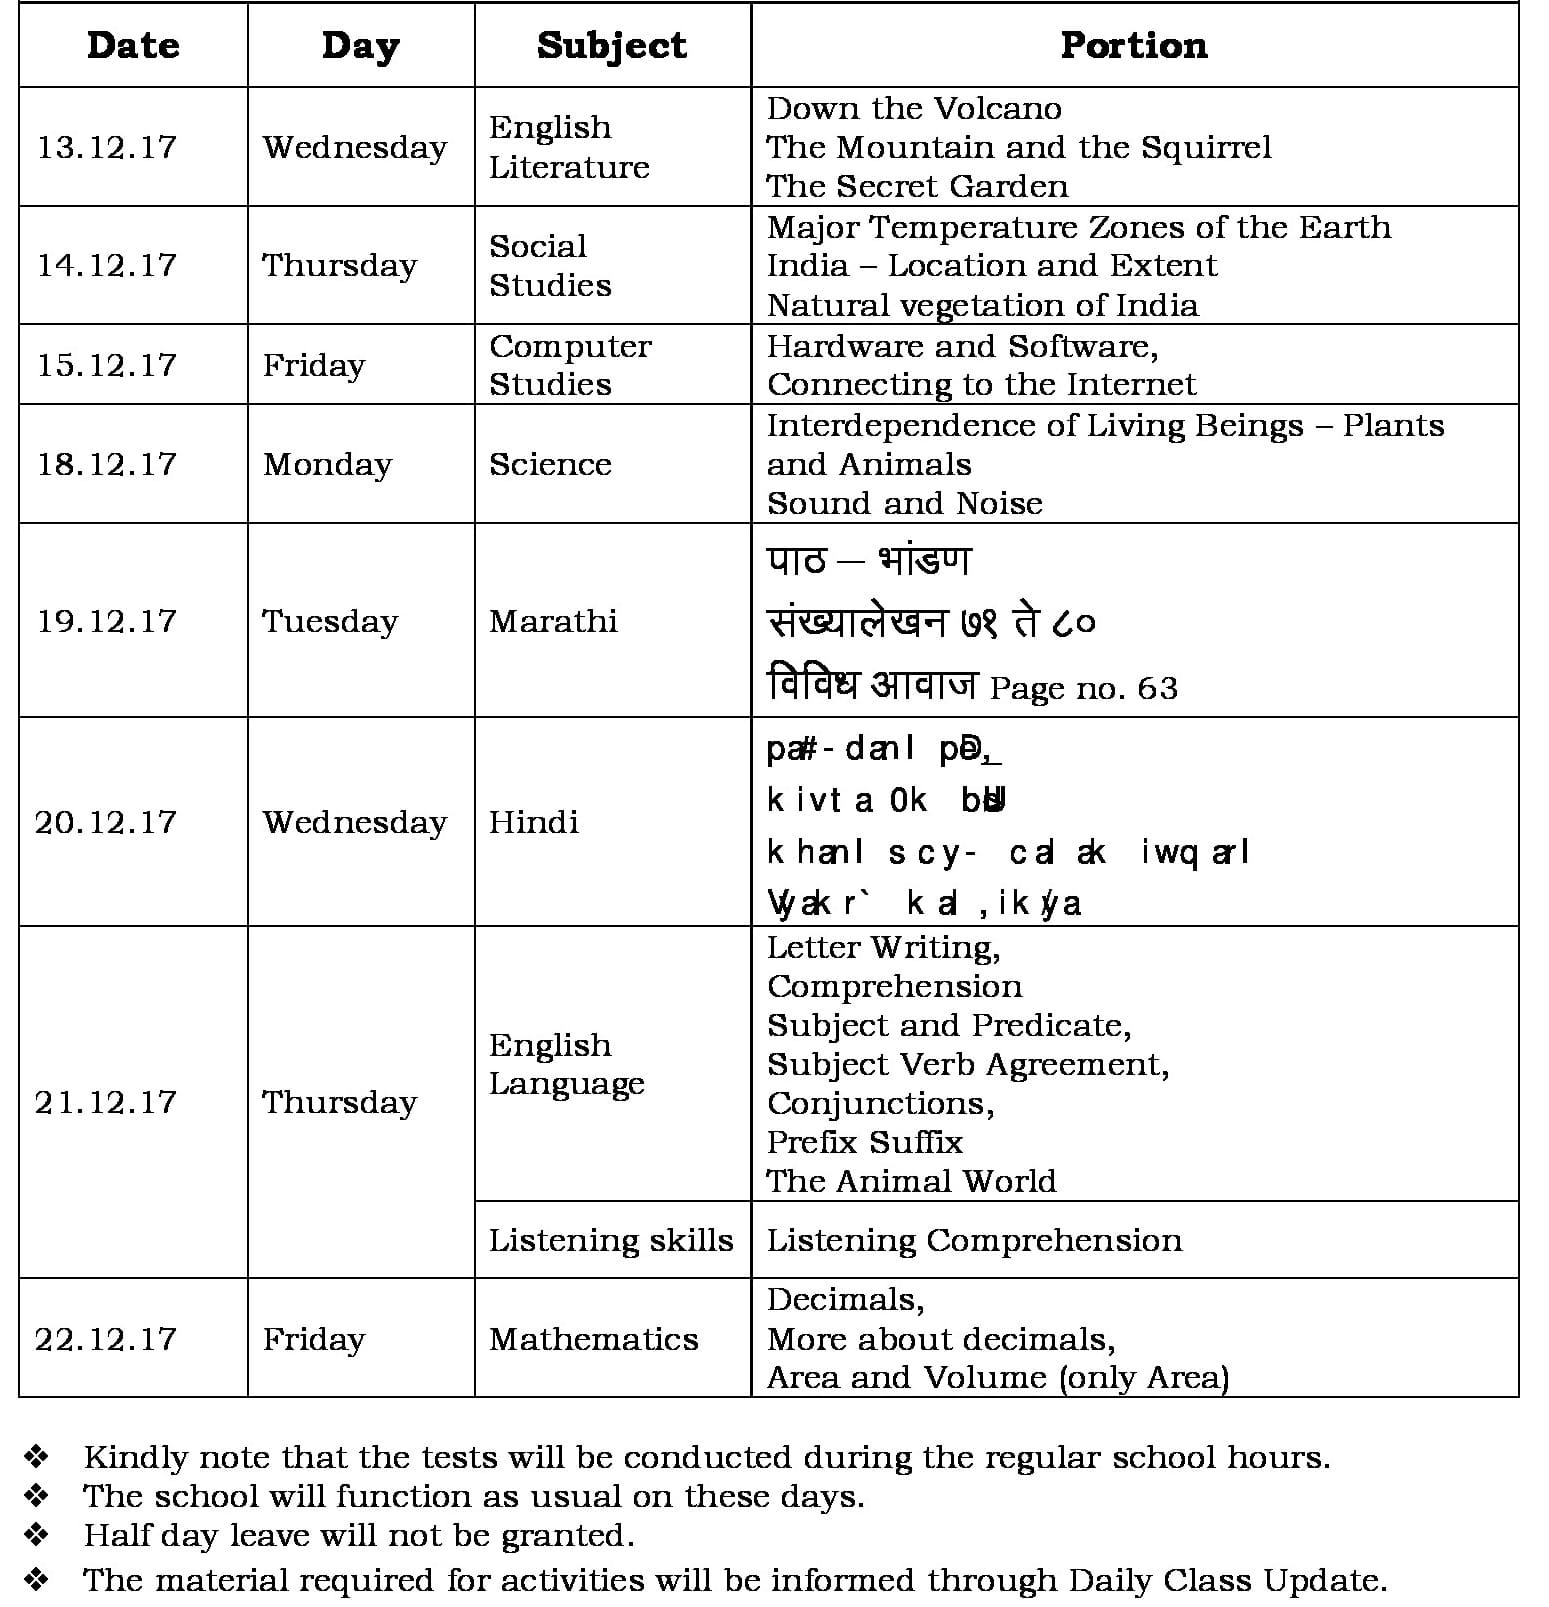 Term II FA-3 Schedule